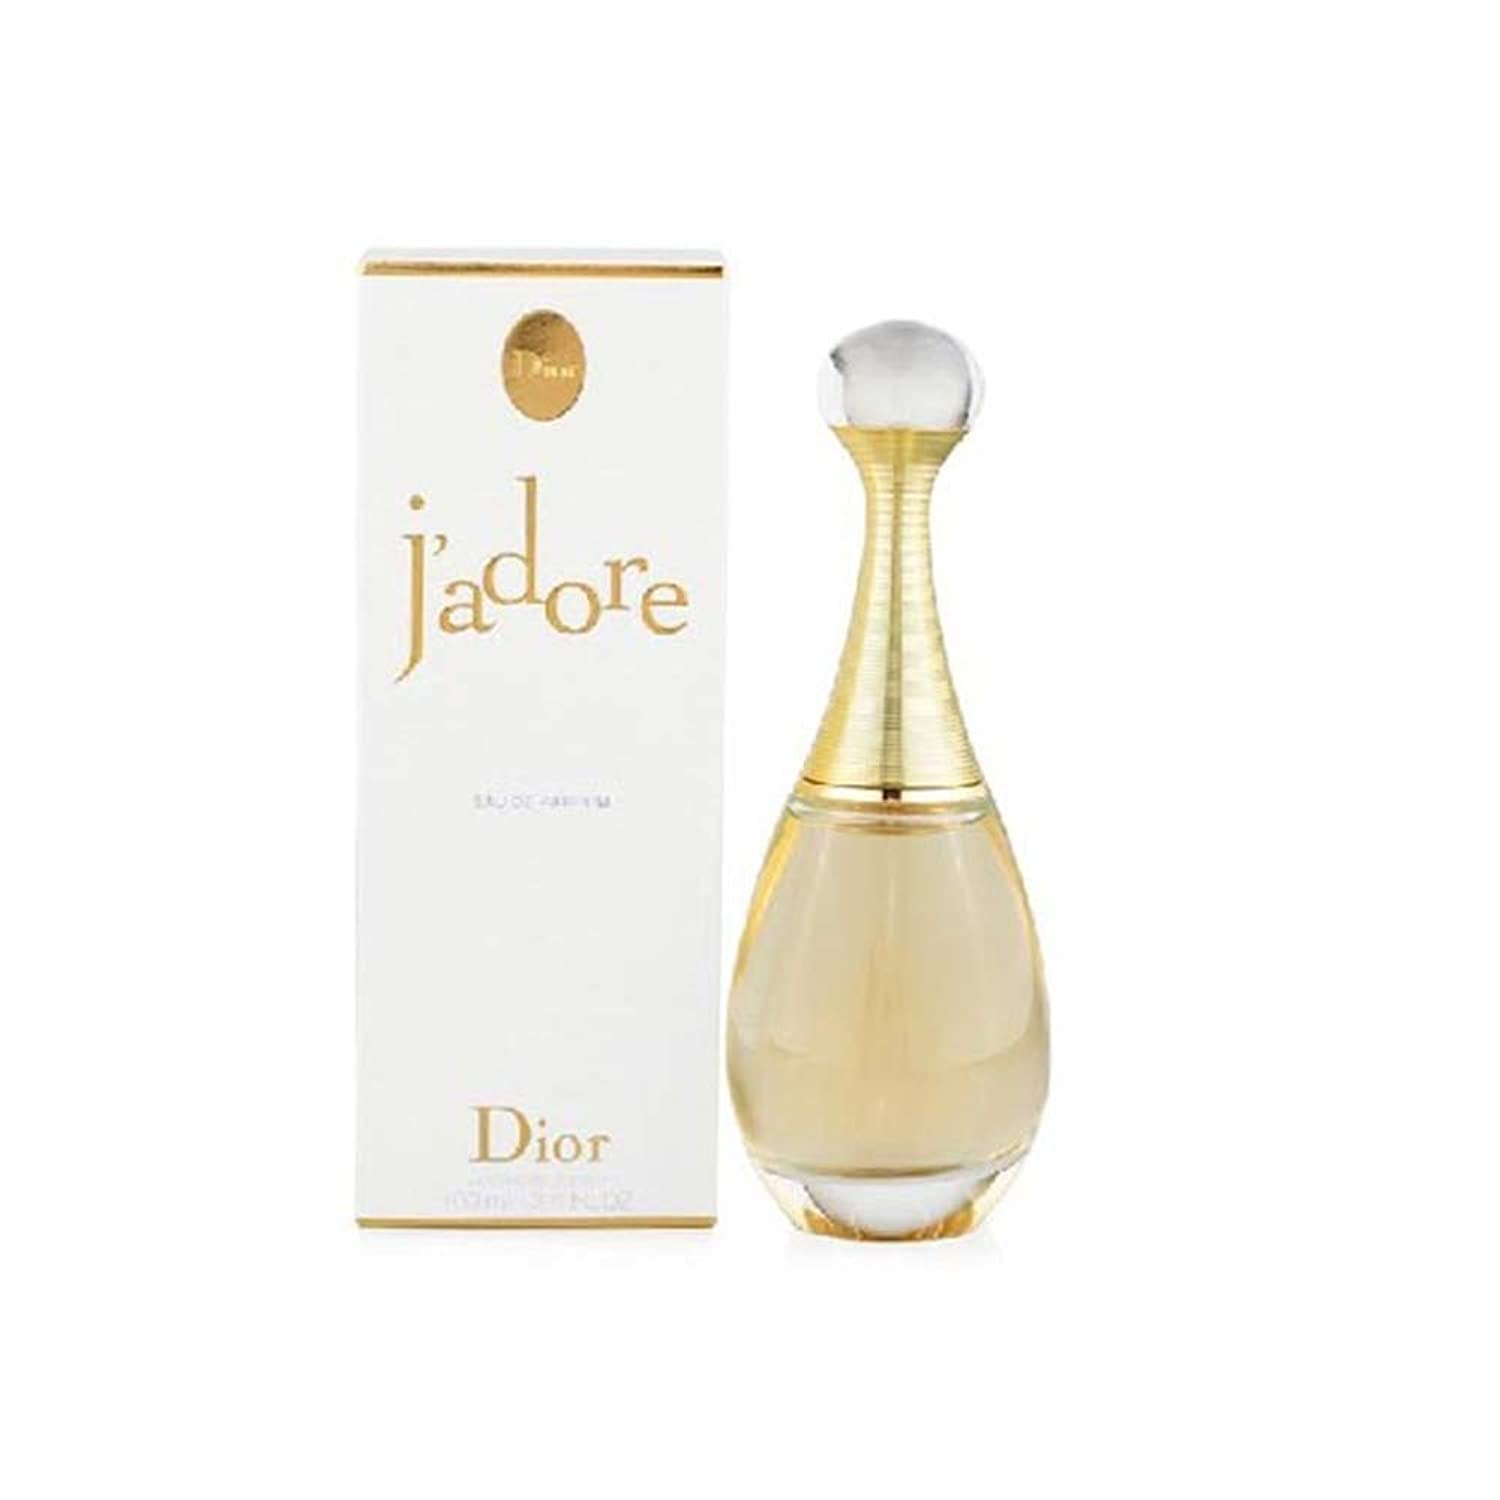 Christian Dior Jadore de para mujeres. Eau De Parfum Spray 3.4 onzas